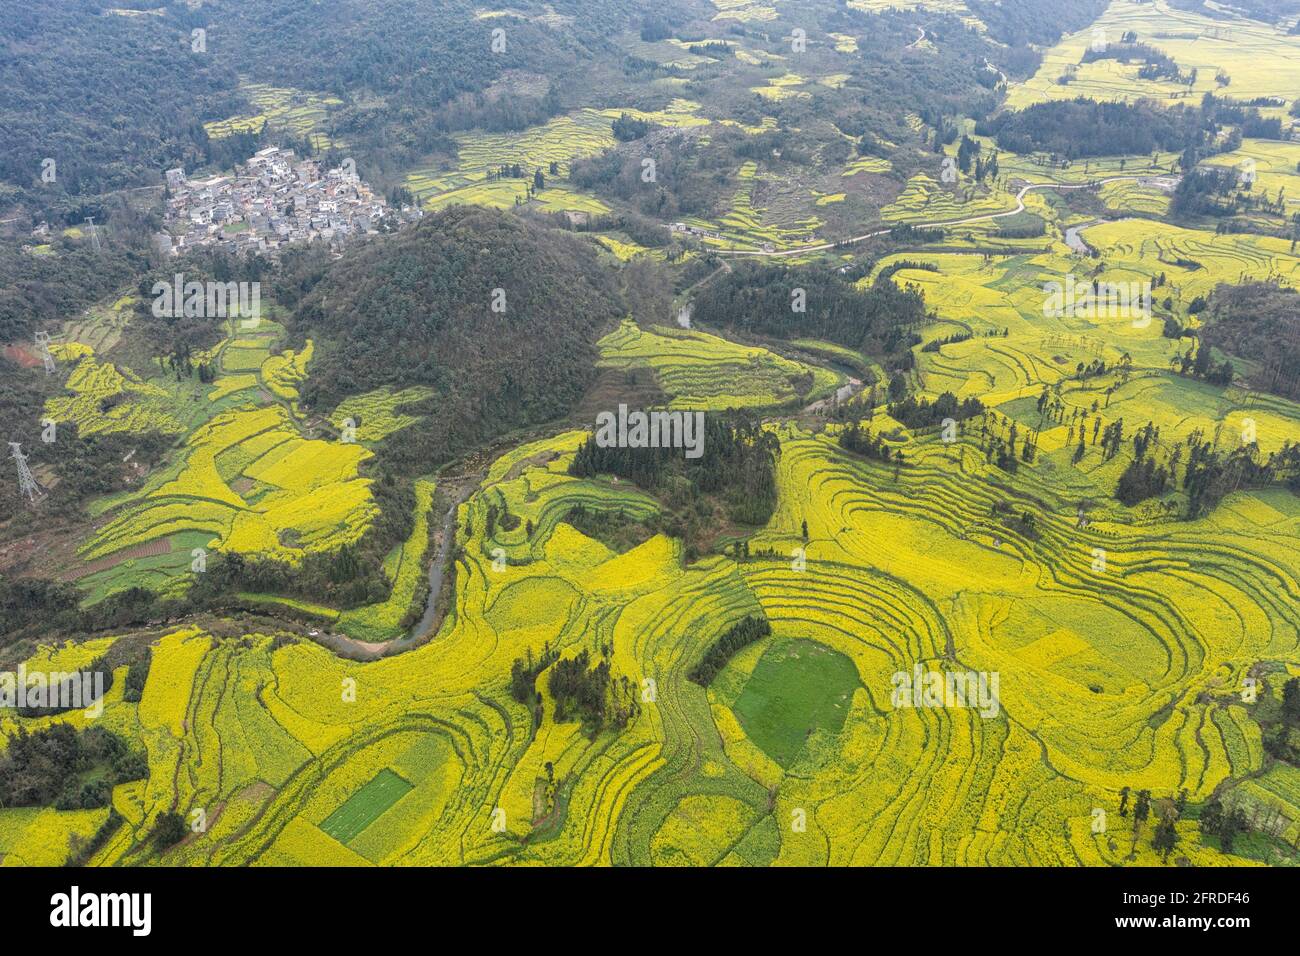 Vista aerea dei fiori di colza a Luoping, Yunnan - Cina Foto Stock